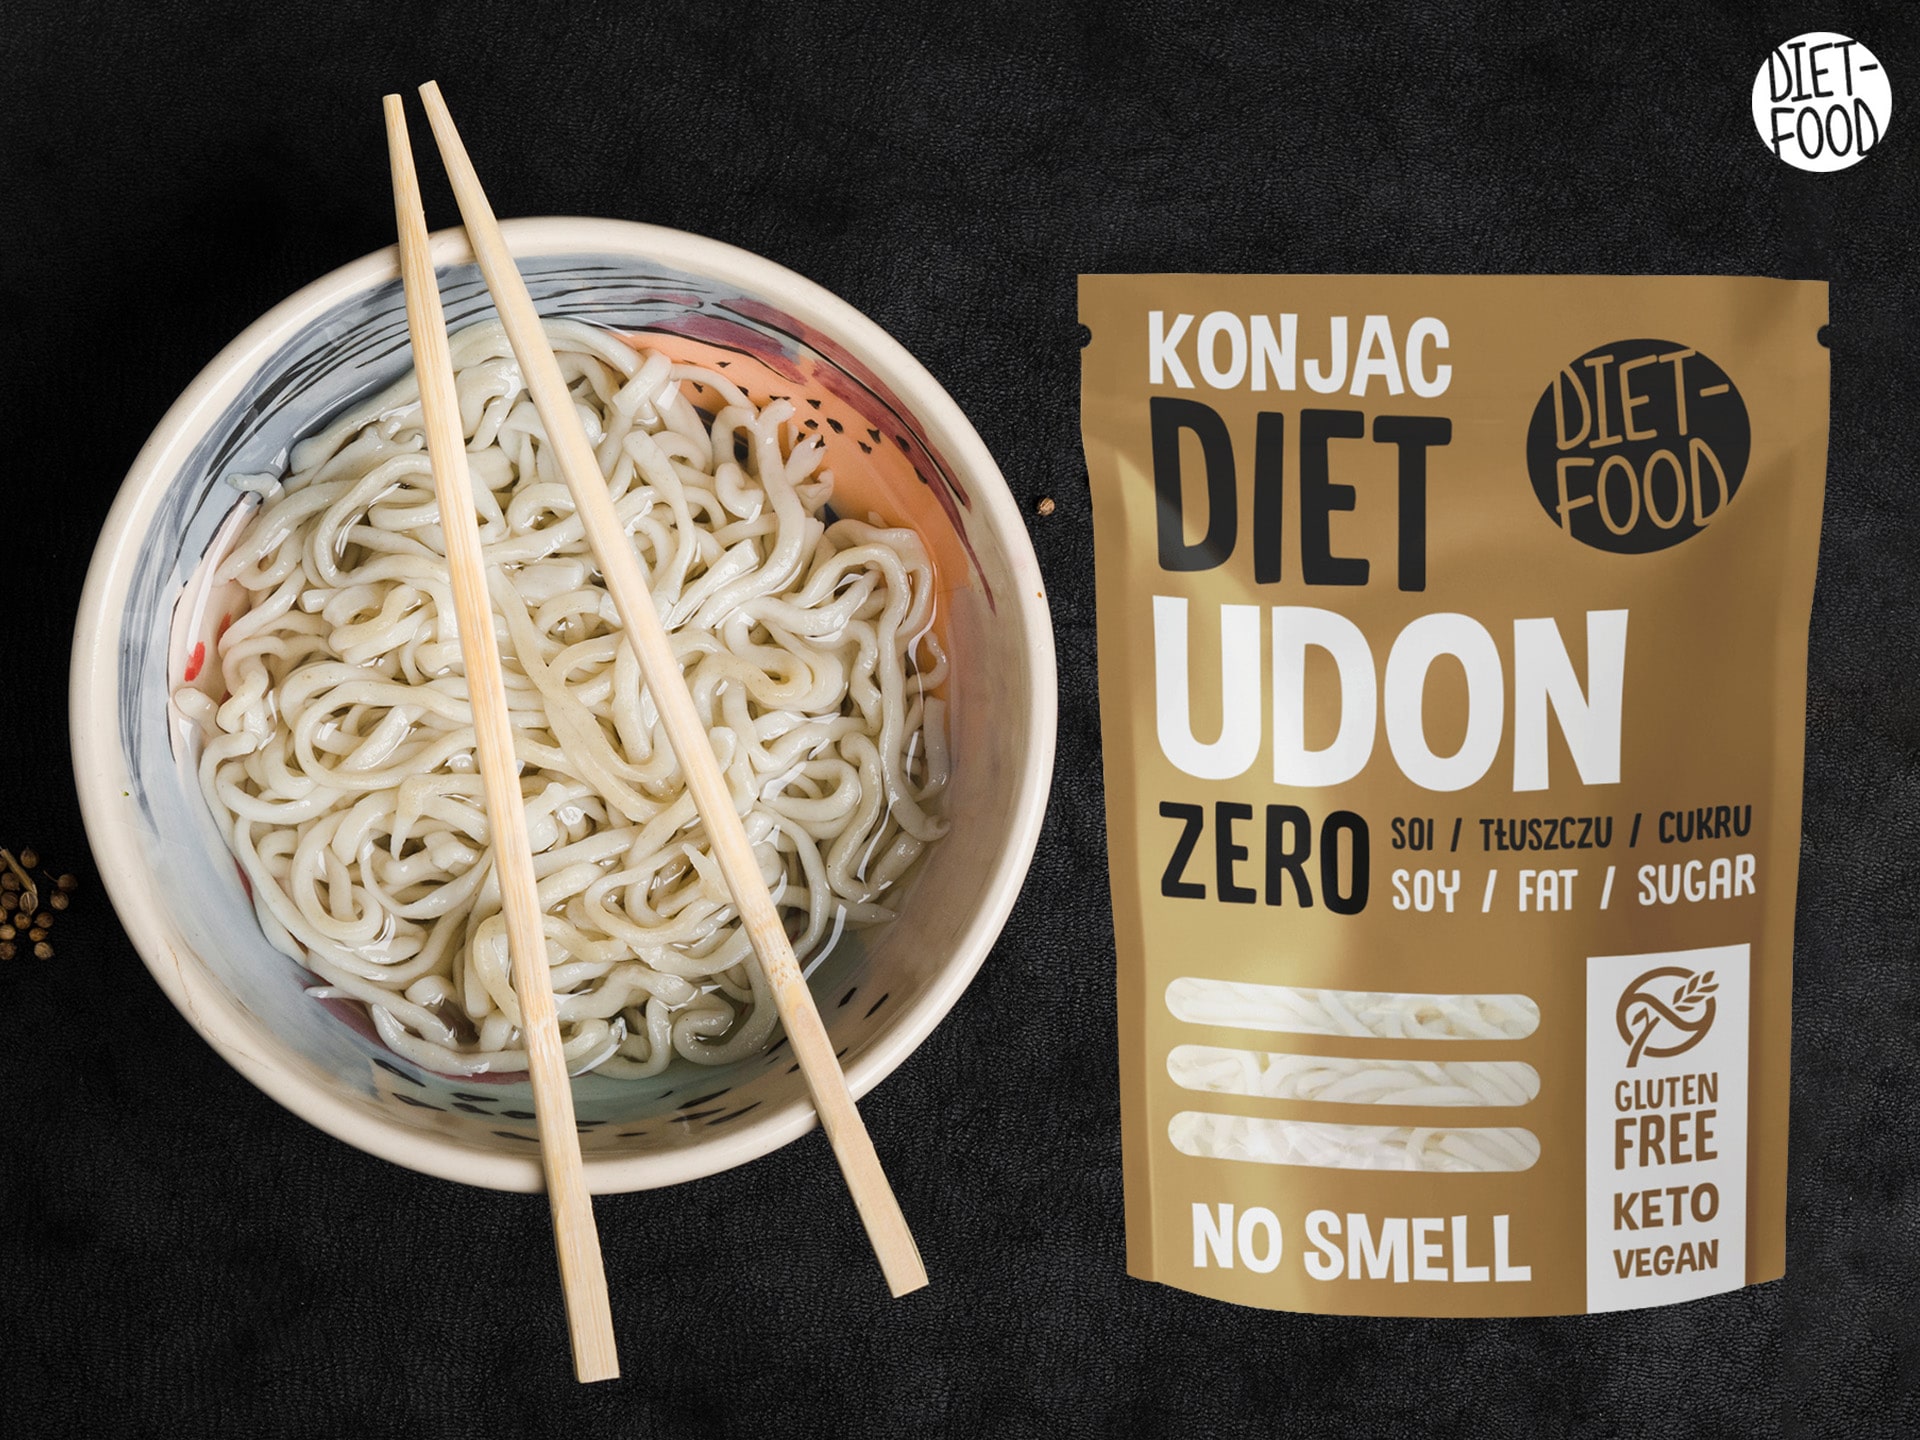 Makaron Udon z konjac - zero kalorii